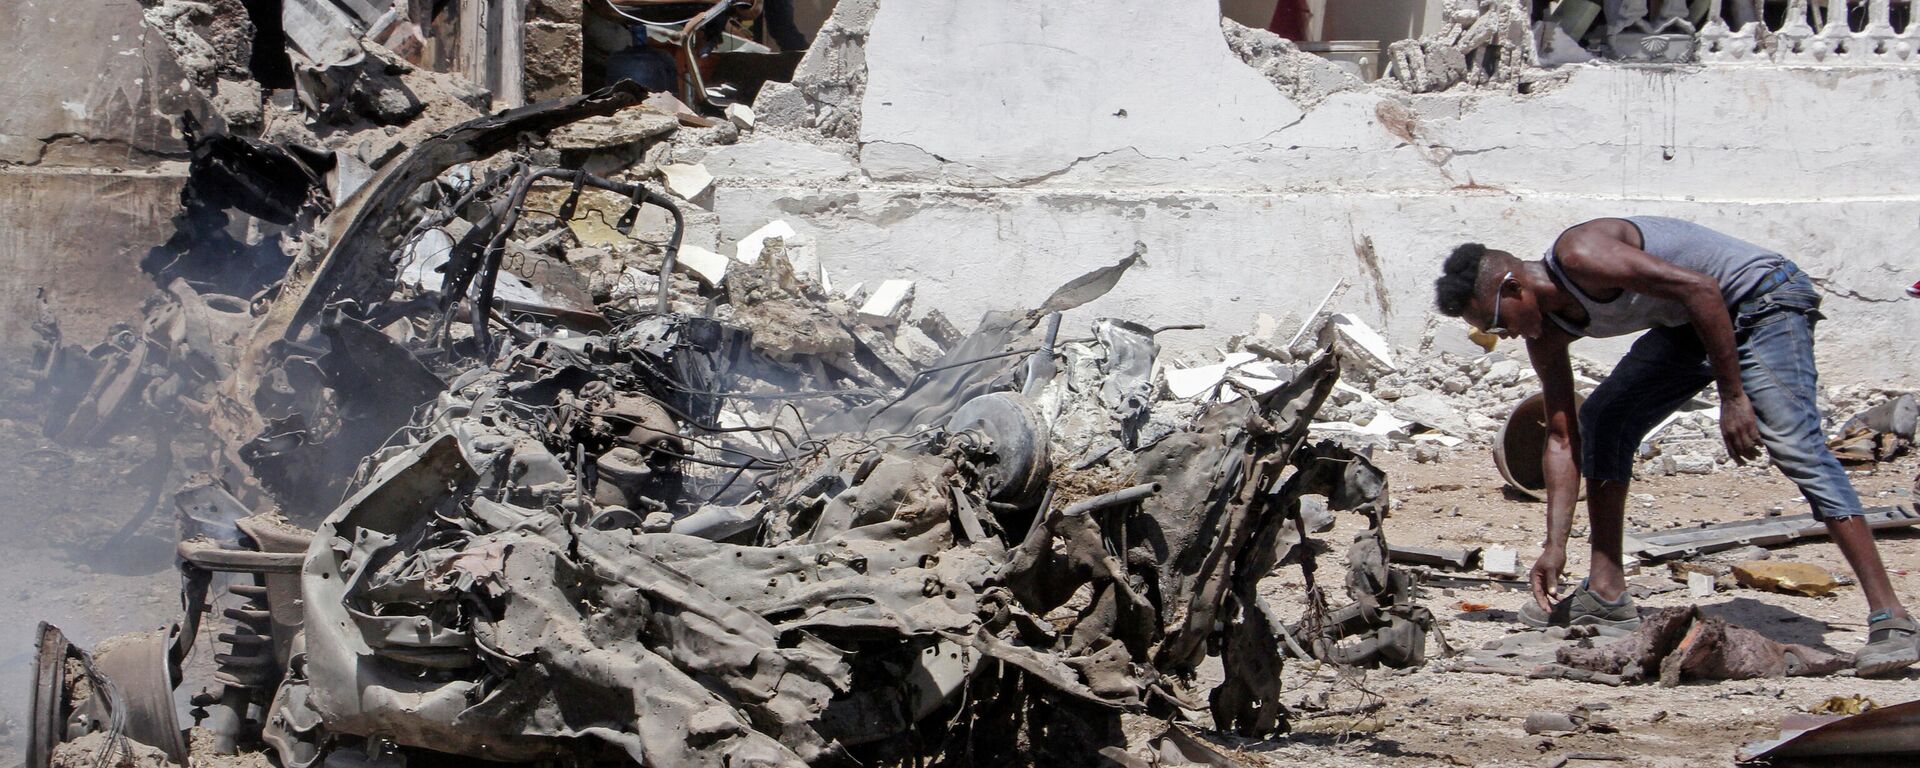 Un hombre busca entre los restos de una explosión en Somalia (archivo) - Sputnik Mundo, 1920, 17.07.2022